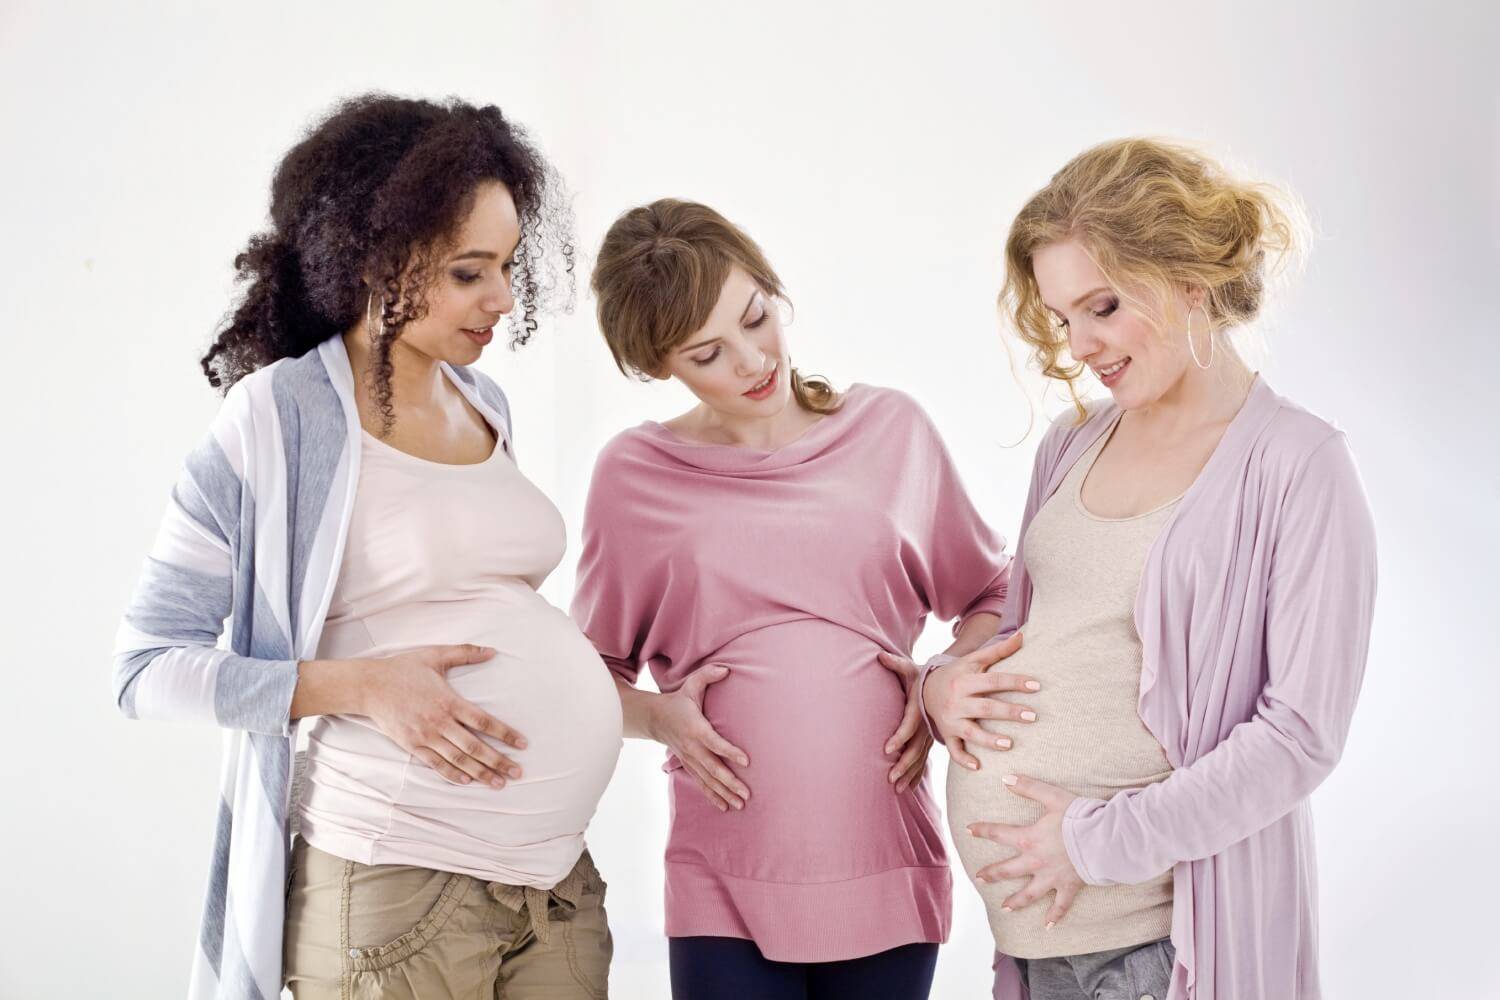 Психология беременности и материнства